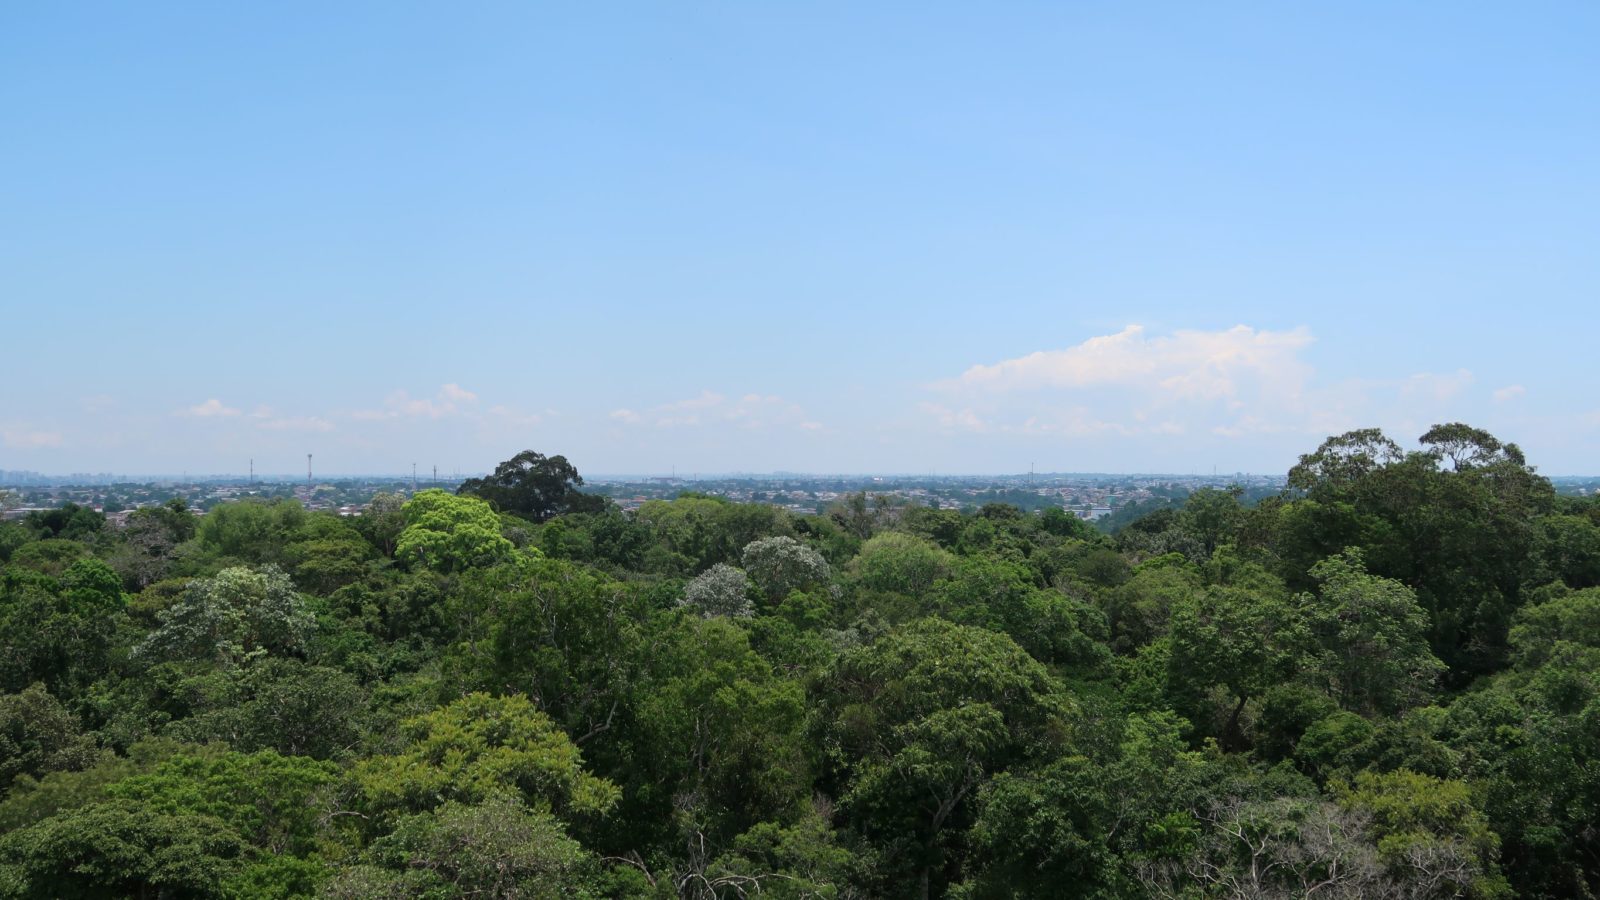 Amazonas - her i Manaus' botaniske have